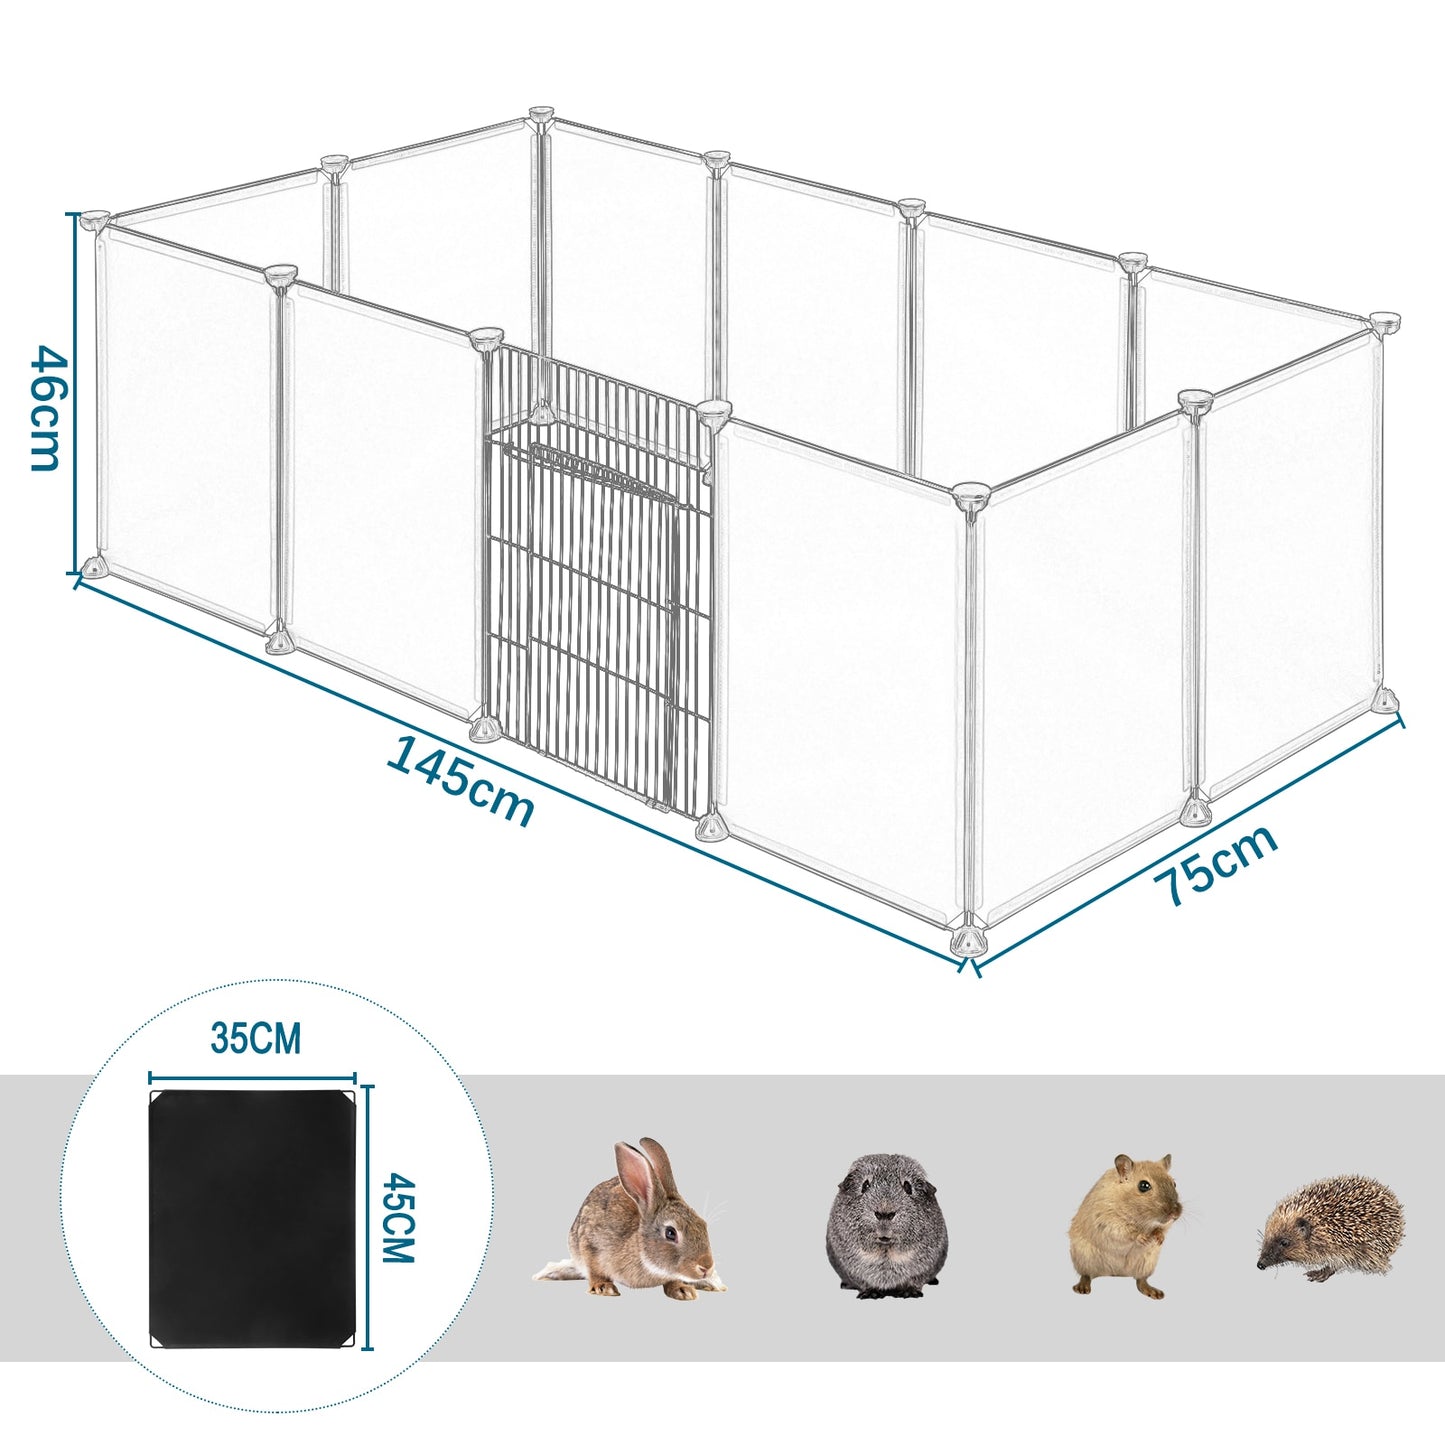 DIY Metall Draht Tierlaufstall mit Tür, 11-teiliges modulares Gehege für Kleintiere wie Meerschweinchen, Kaninchen, Hamster und Igel - Unique Outlet